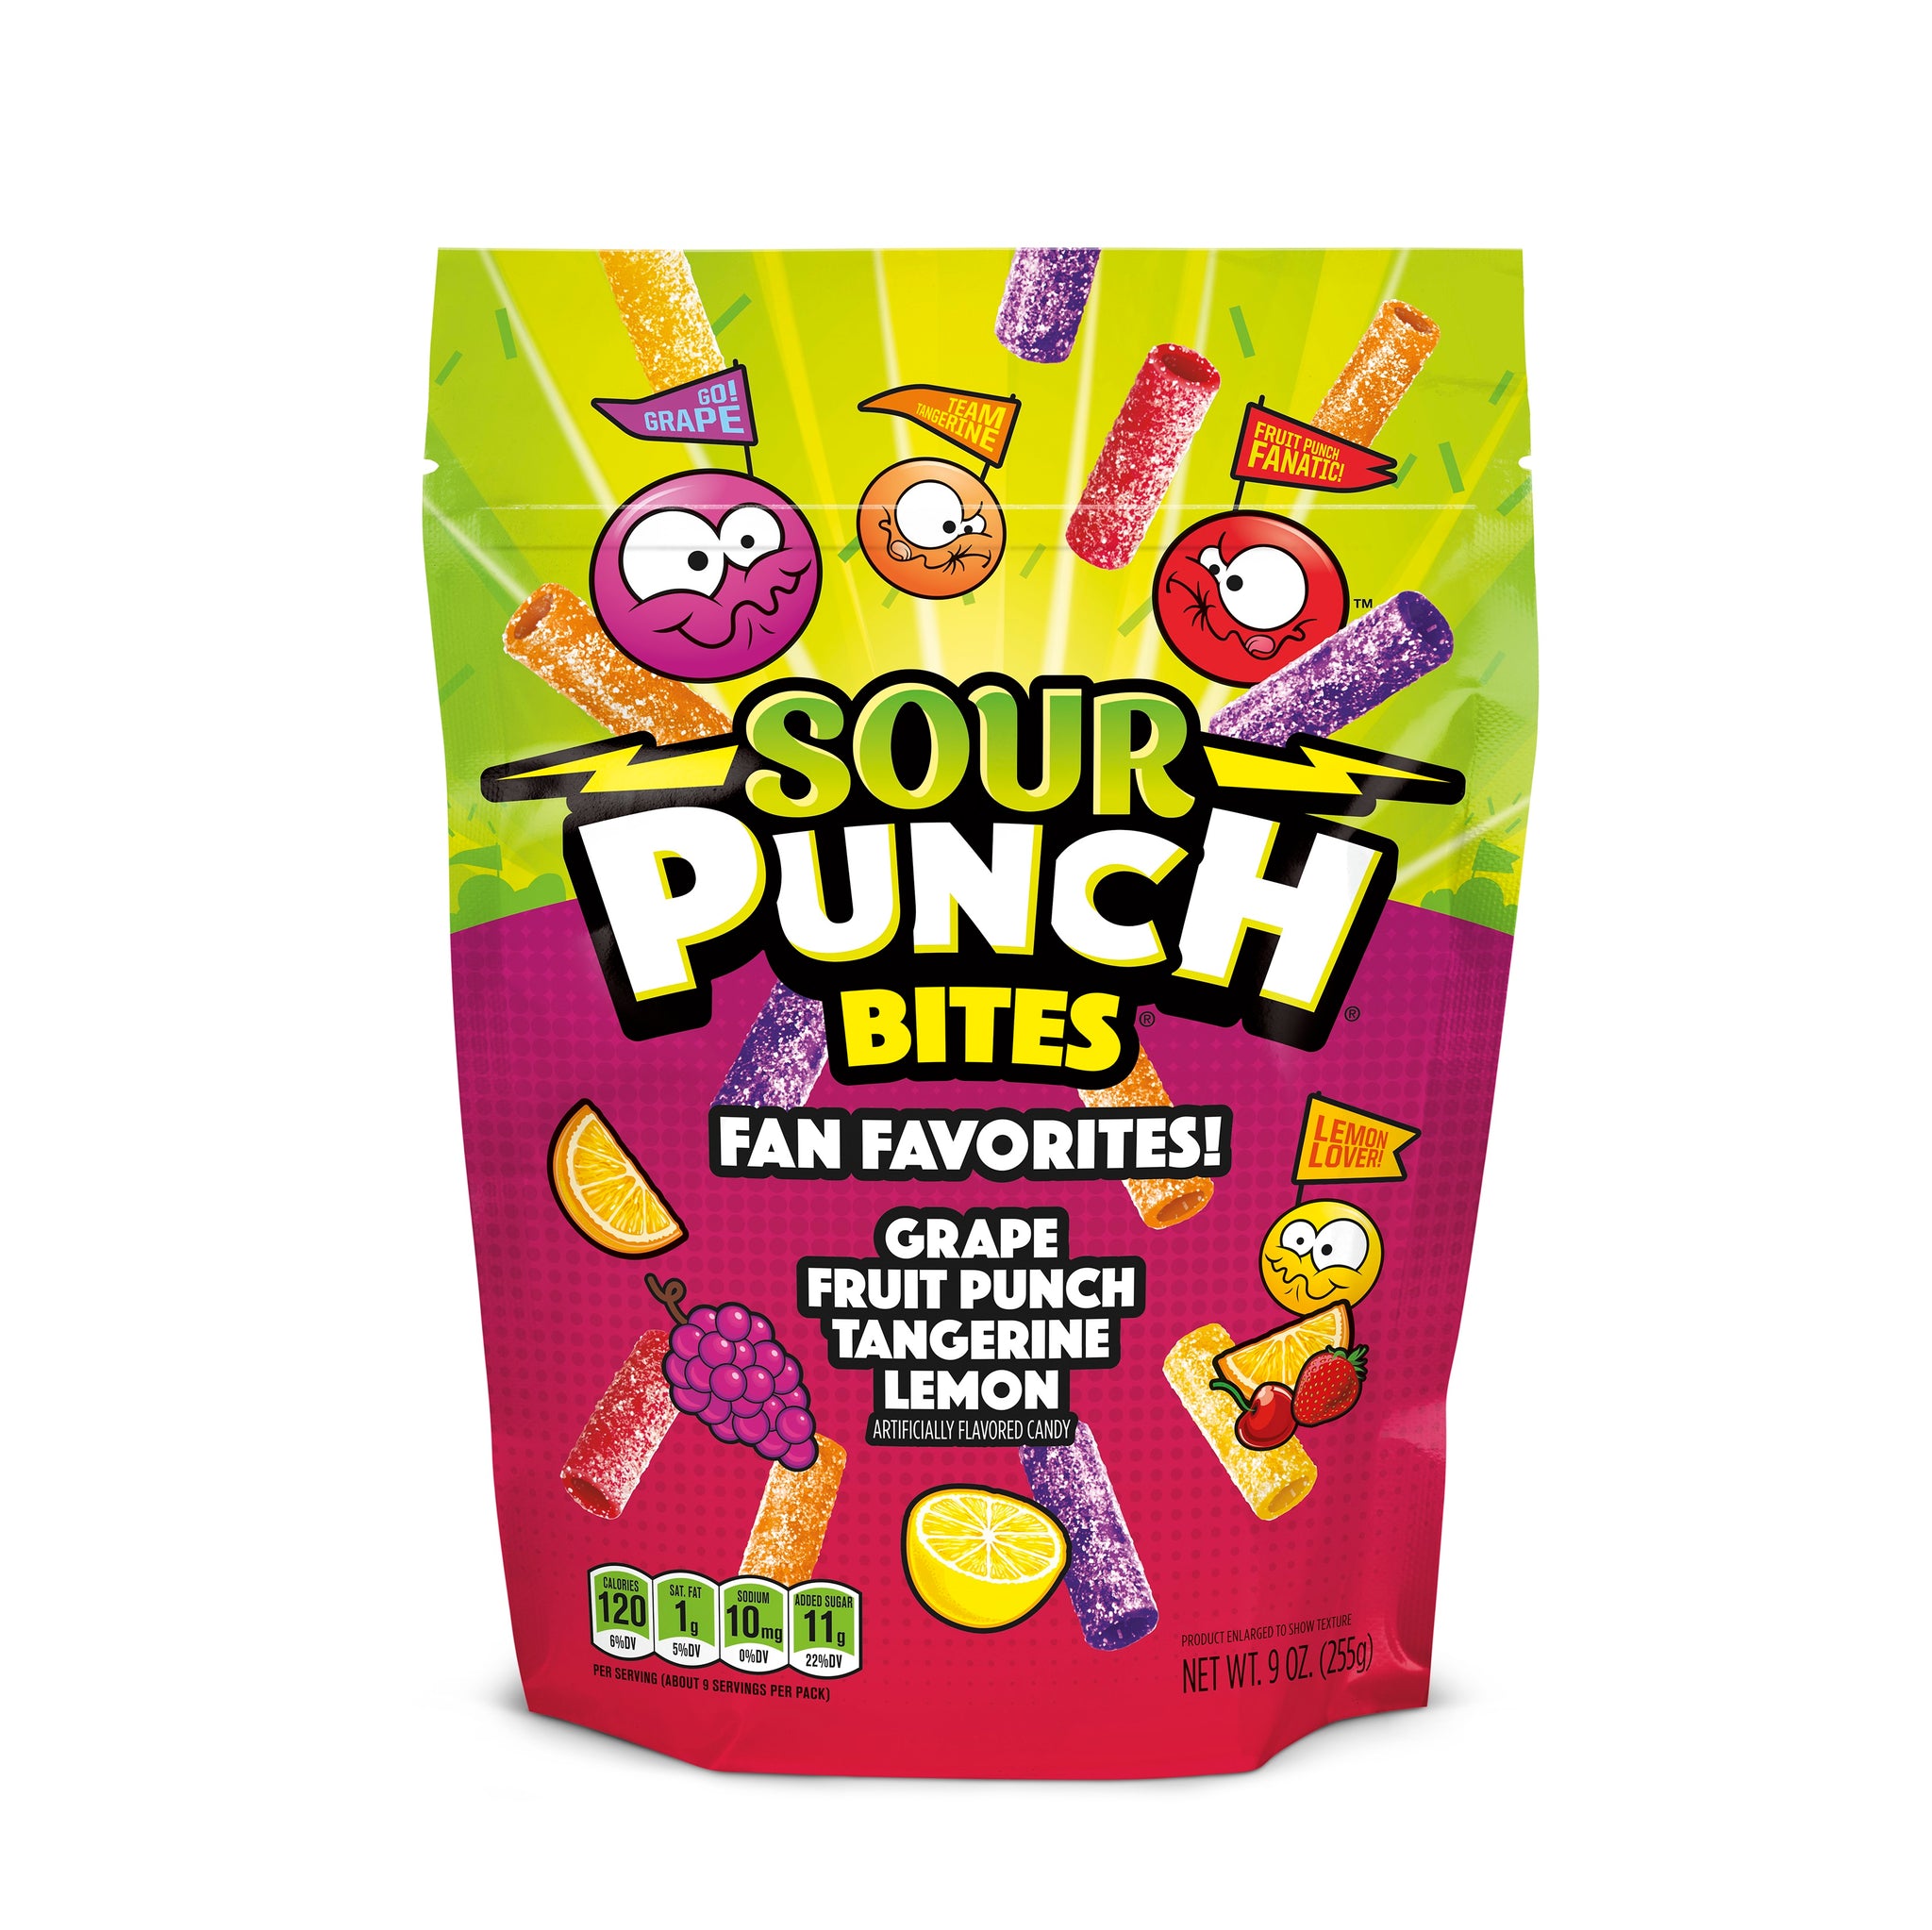 Sour Punch Bites Fan Favorites, 9oz